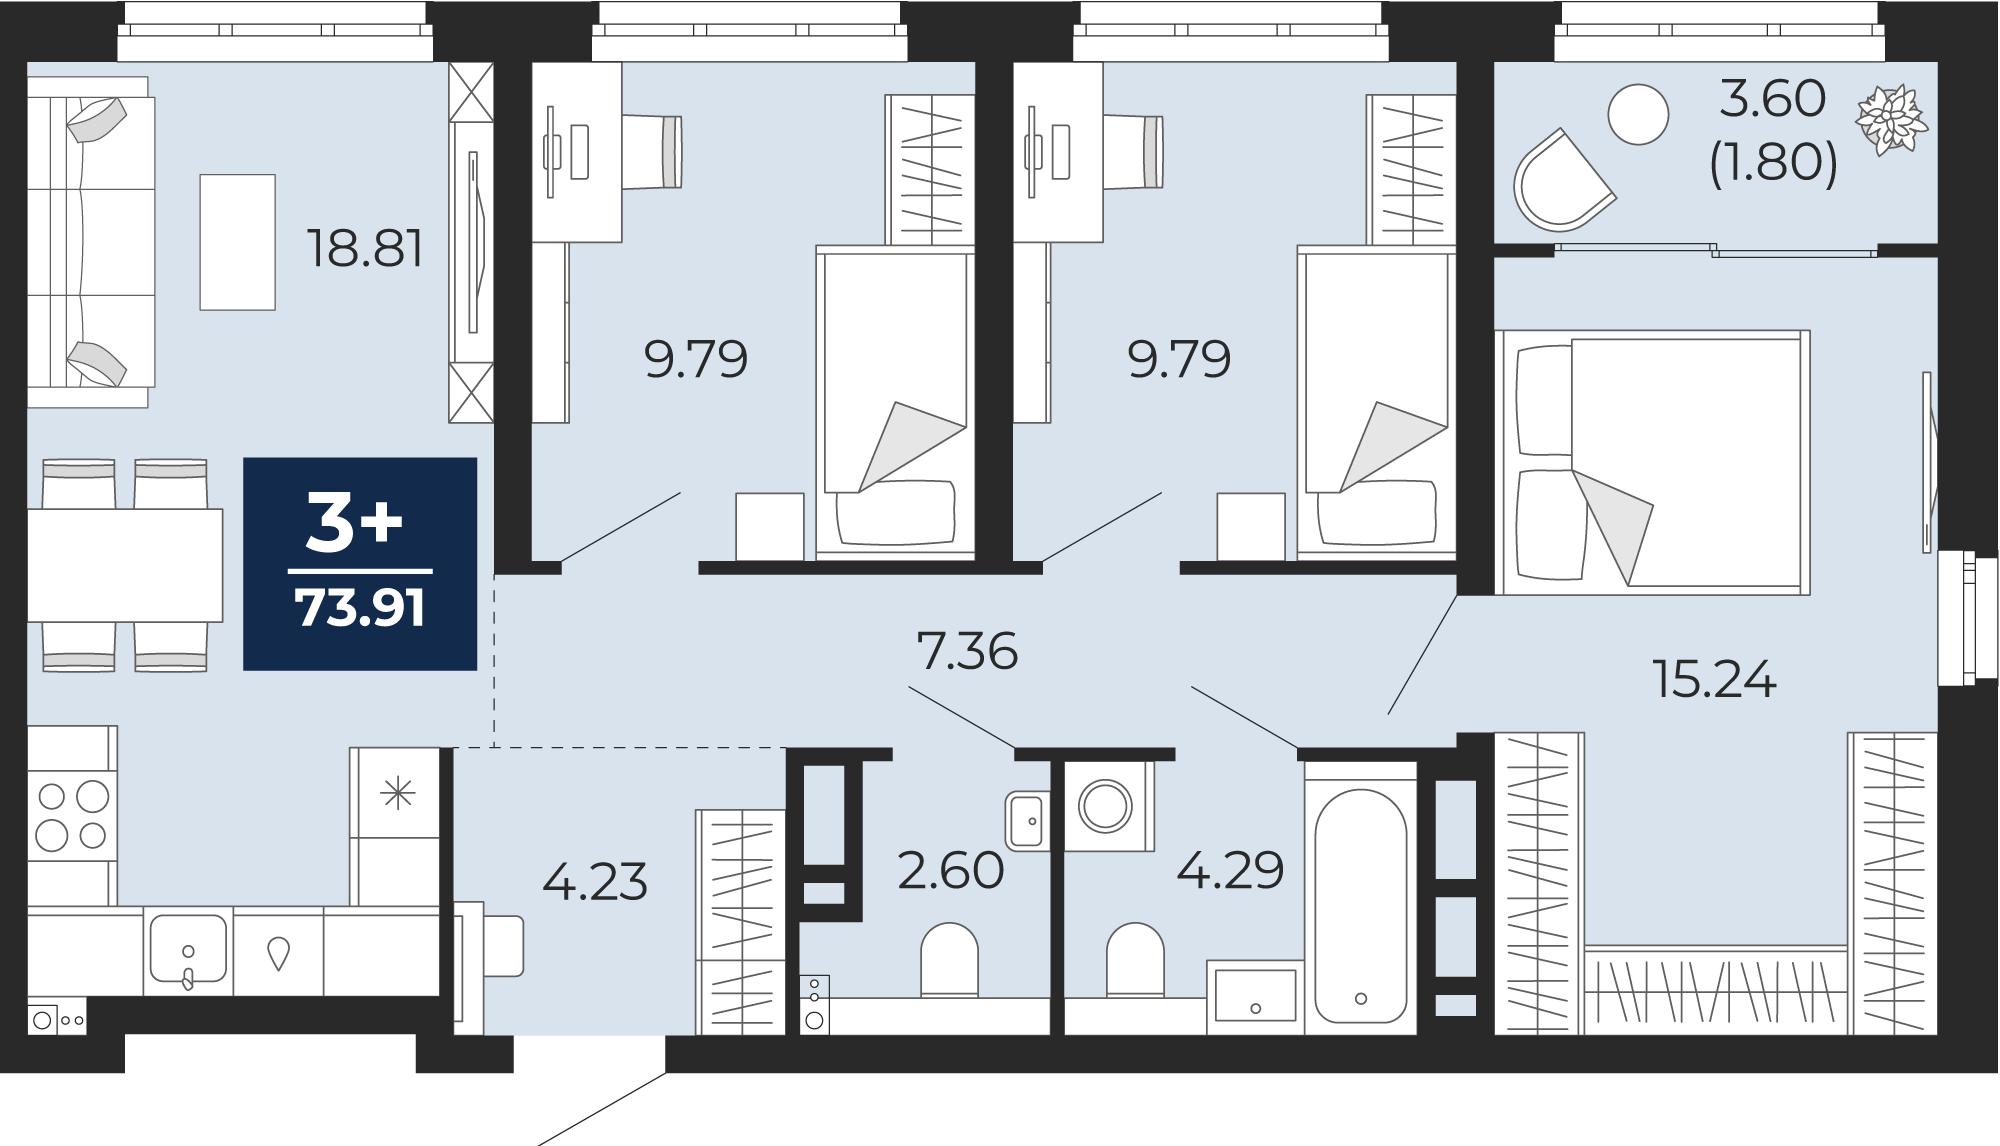 Квартира № 26, 3-комнатная, 73.91 кв. м, 7 этаж